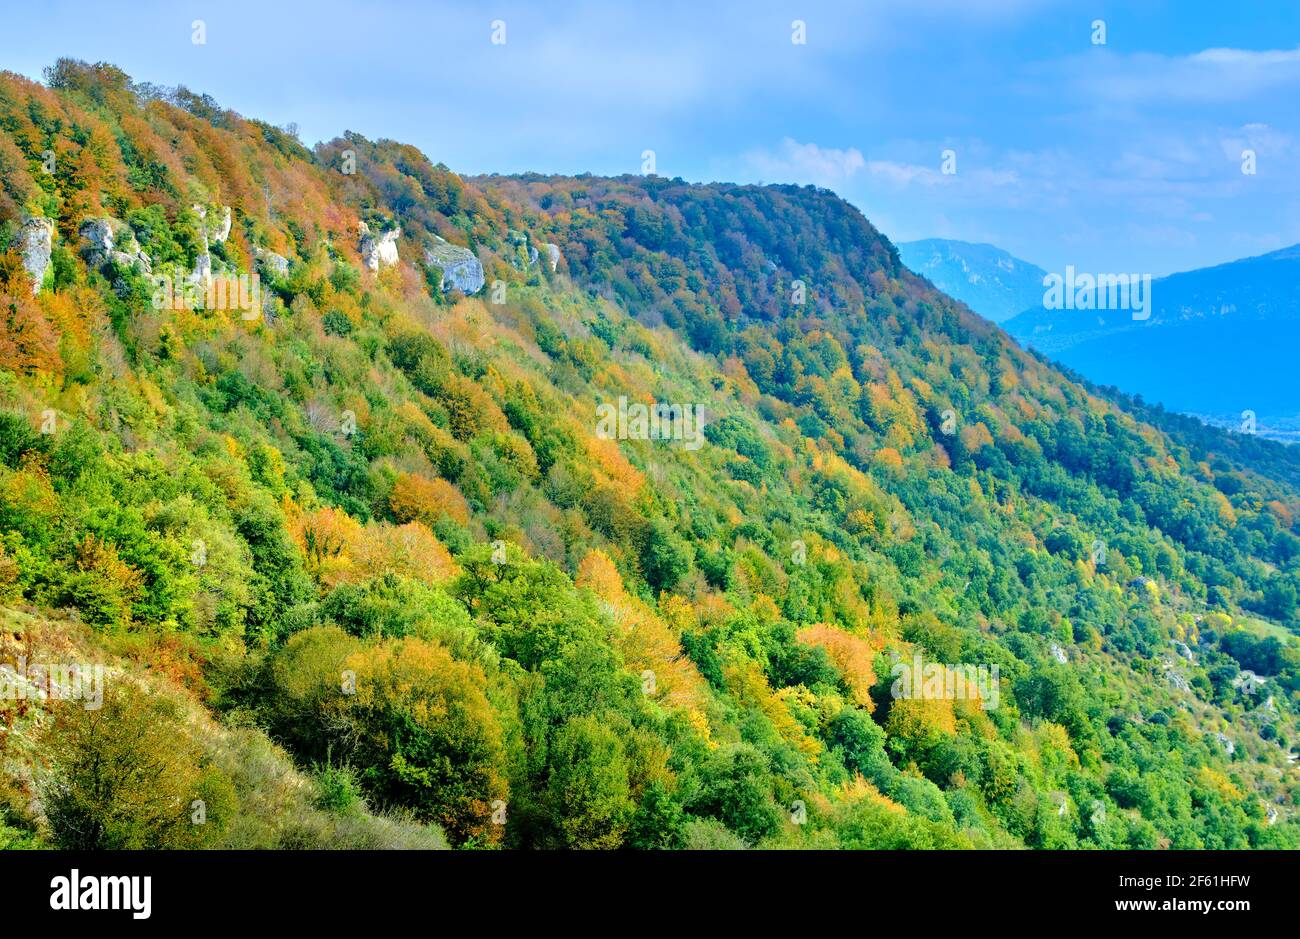 Beechwood and mountain range in autumn. Stock Photo